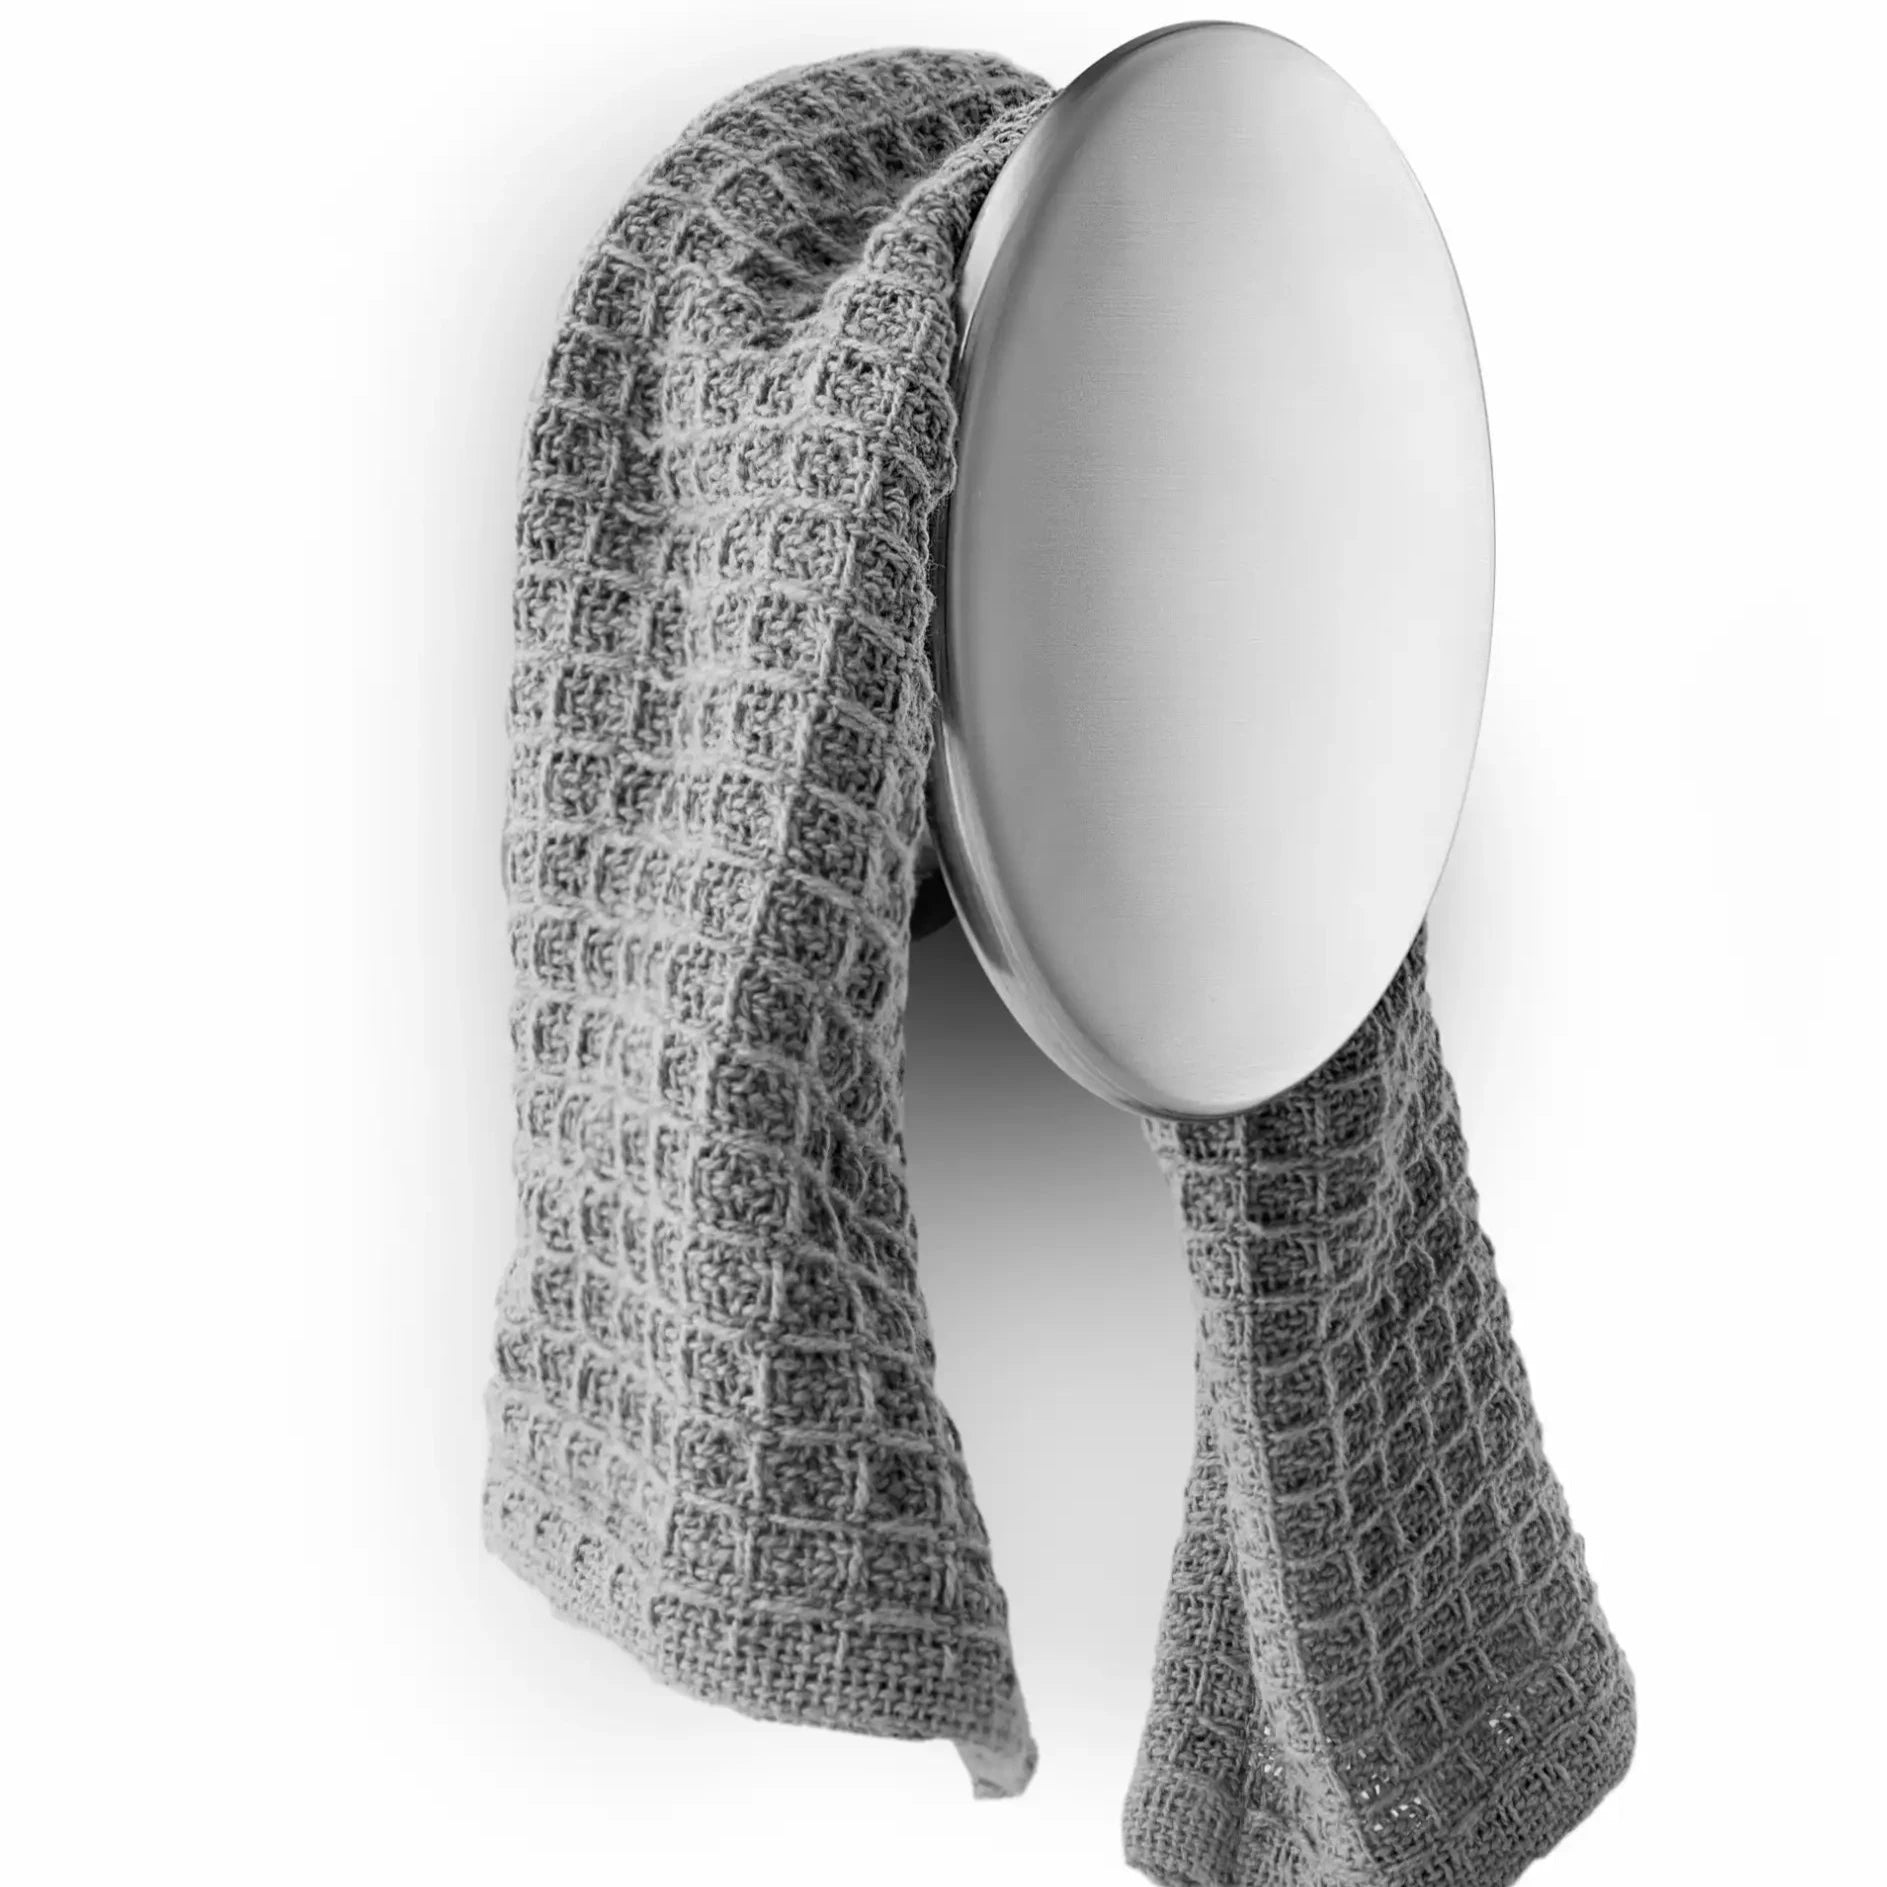 Eva Solo Holder for Dishcloth | Panik Design